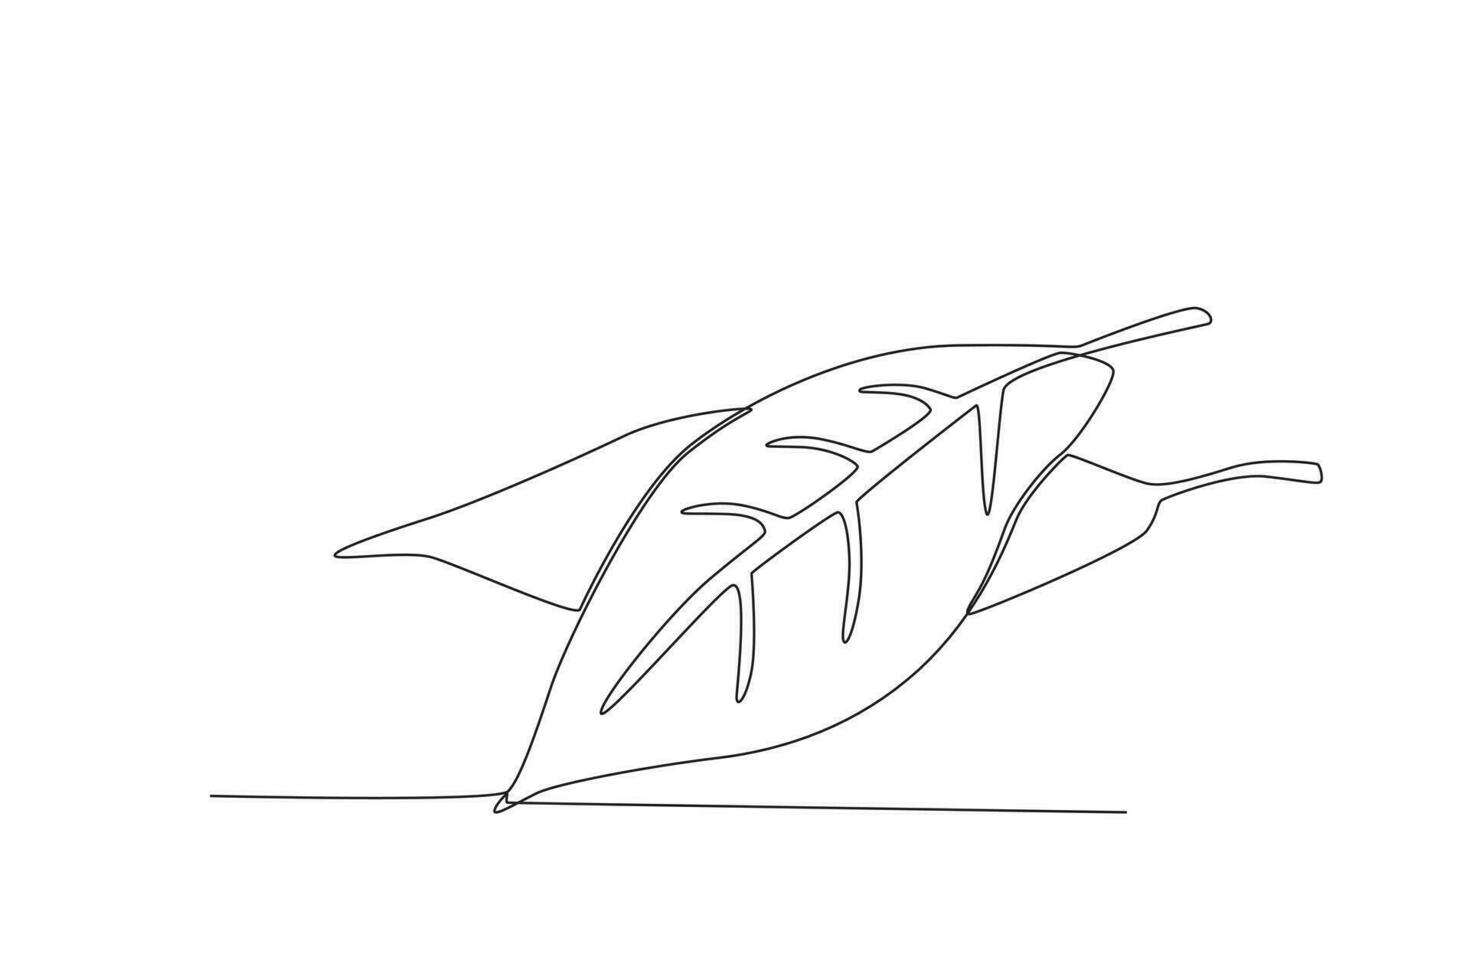 single een lijn tekening baai blad groente concept doorlopend lijn trek ontwerp grafisch vector illustratie